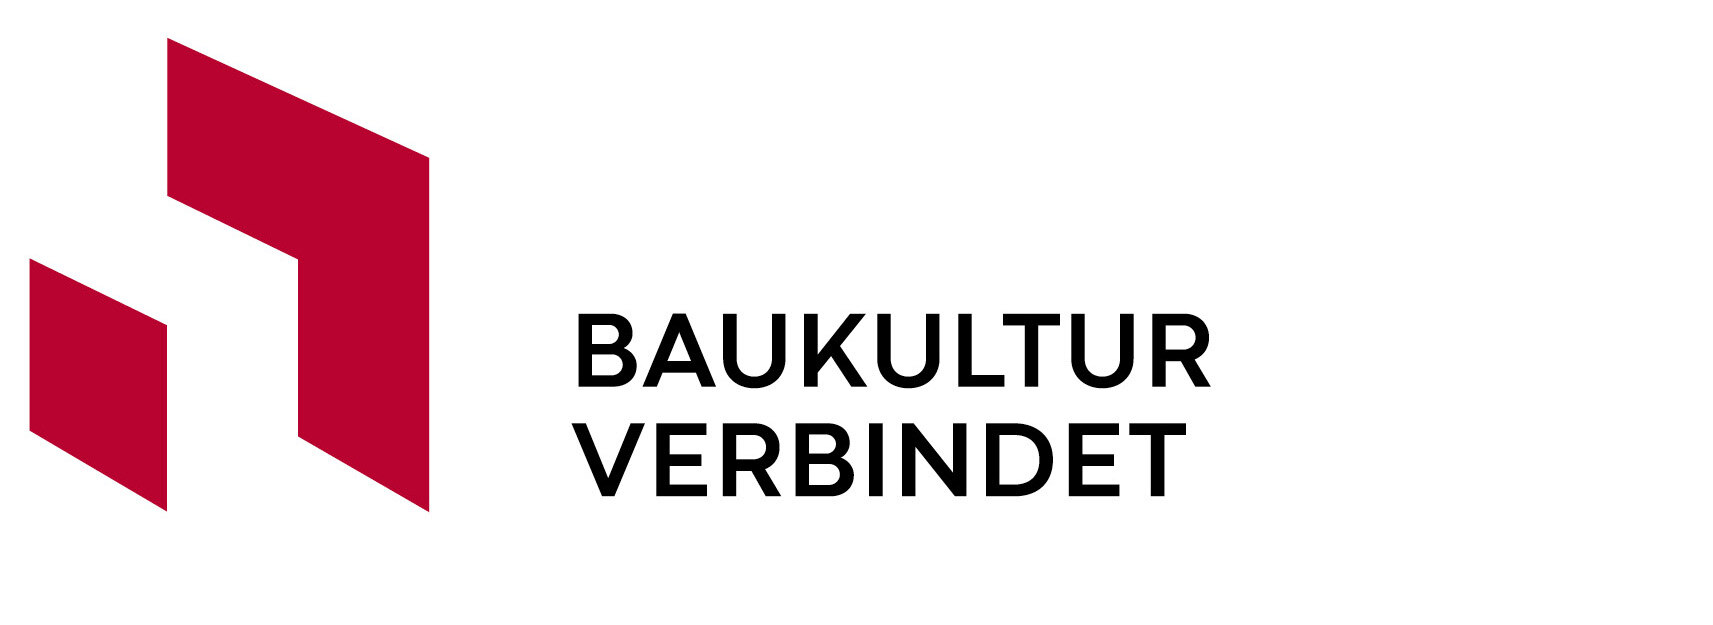 Logo Baukultur Verbindet - rote Grafik und schwarzer Schriftzug